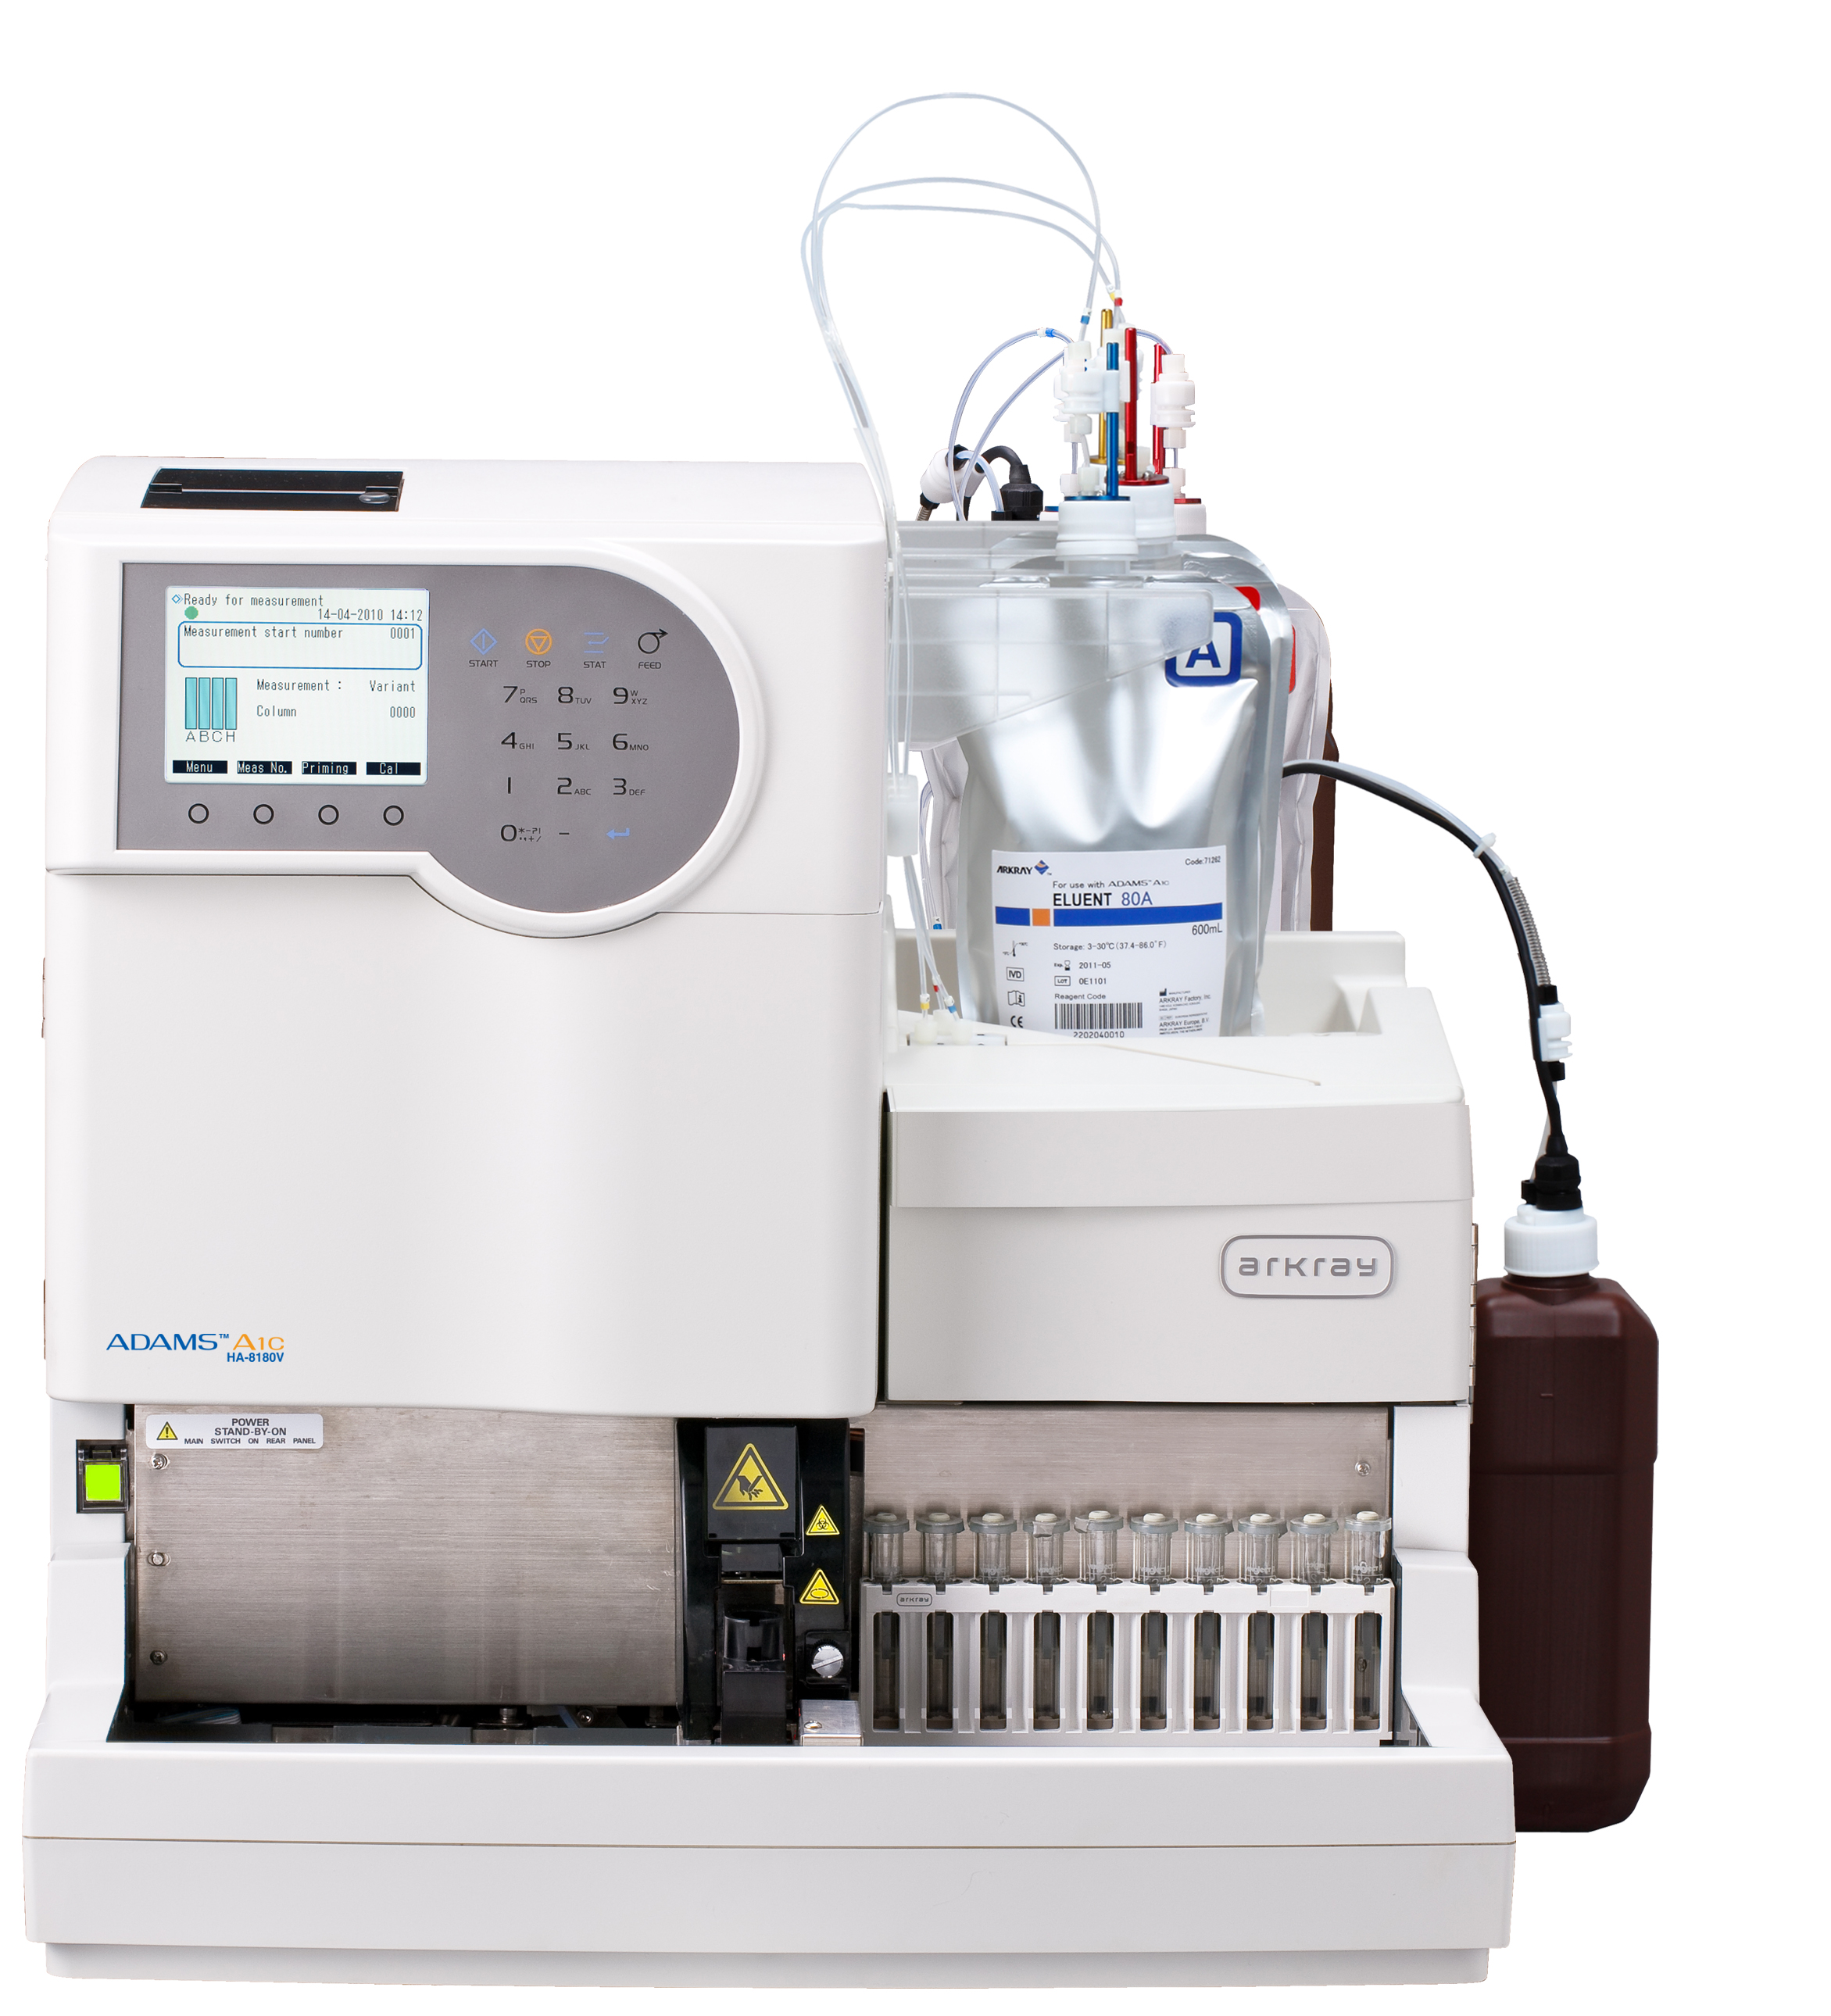 Adams A1c HA-8180 Автоматический анализатор для измерения гликированного гемоглобина